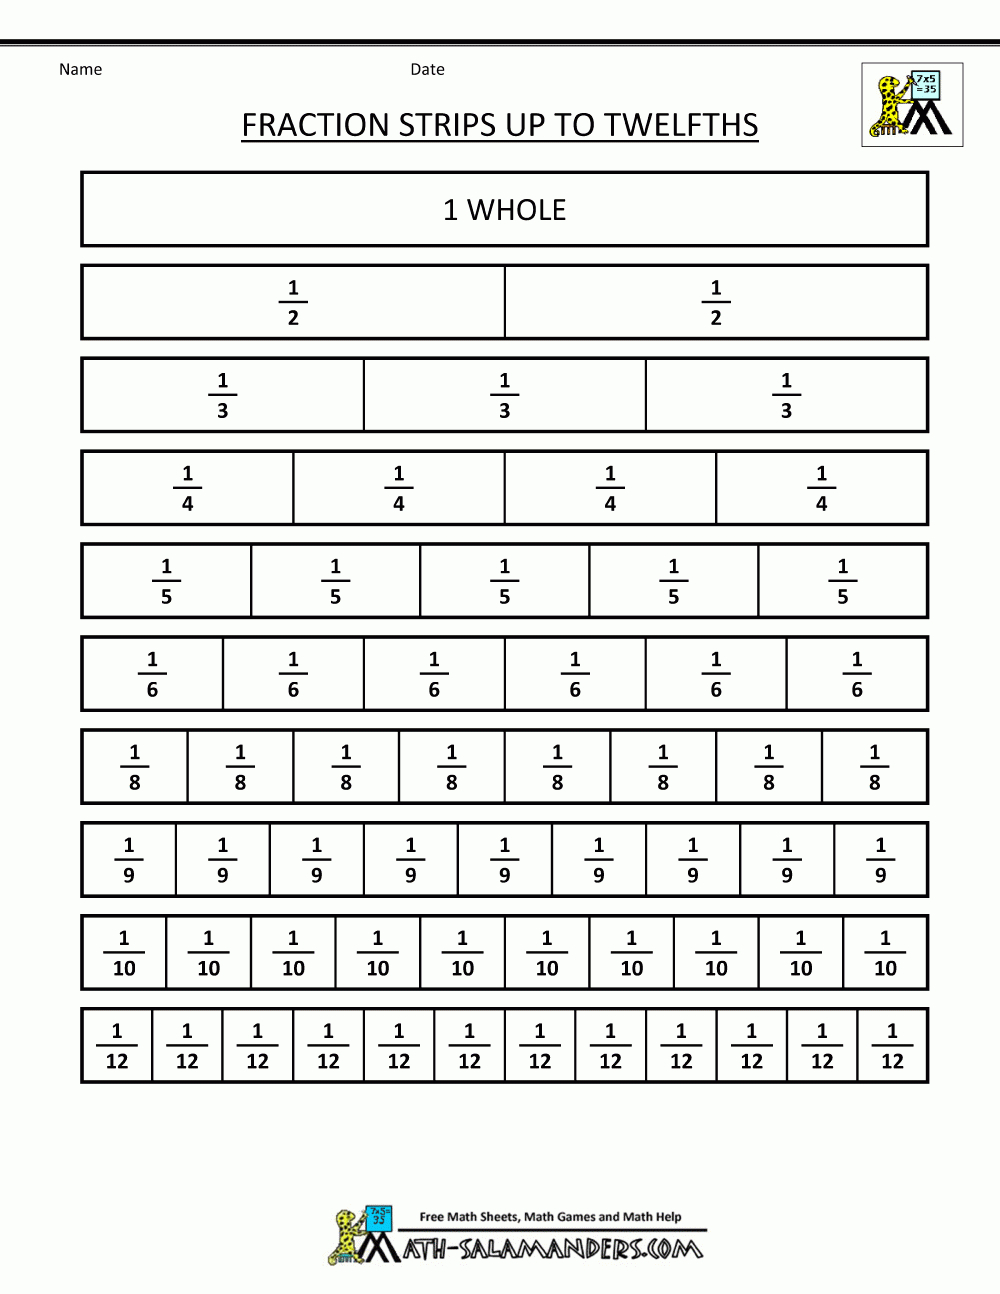 Best Fraction Strips Printable | Weaver Website intended for Printable Multiplication Strips